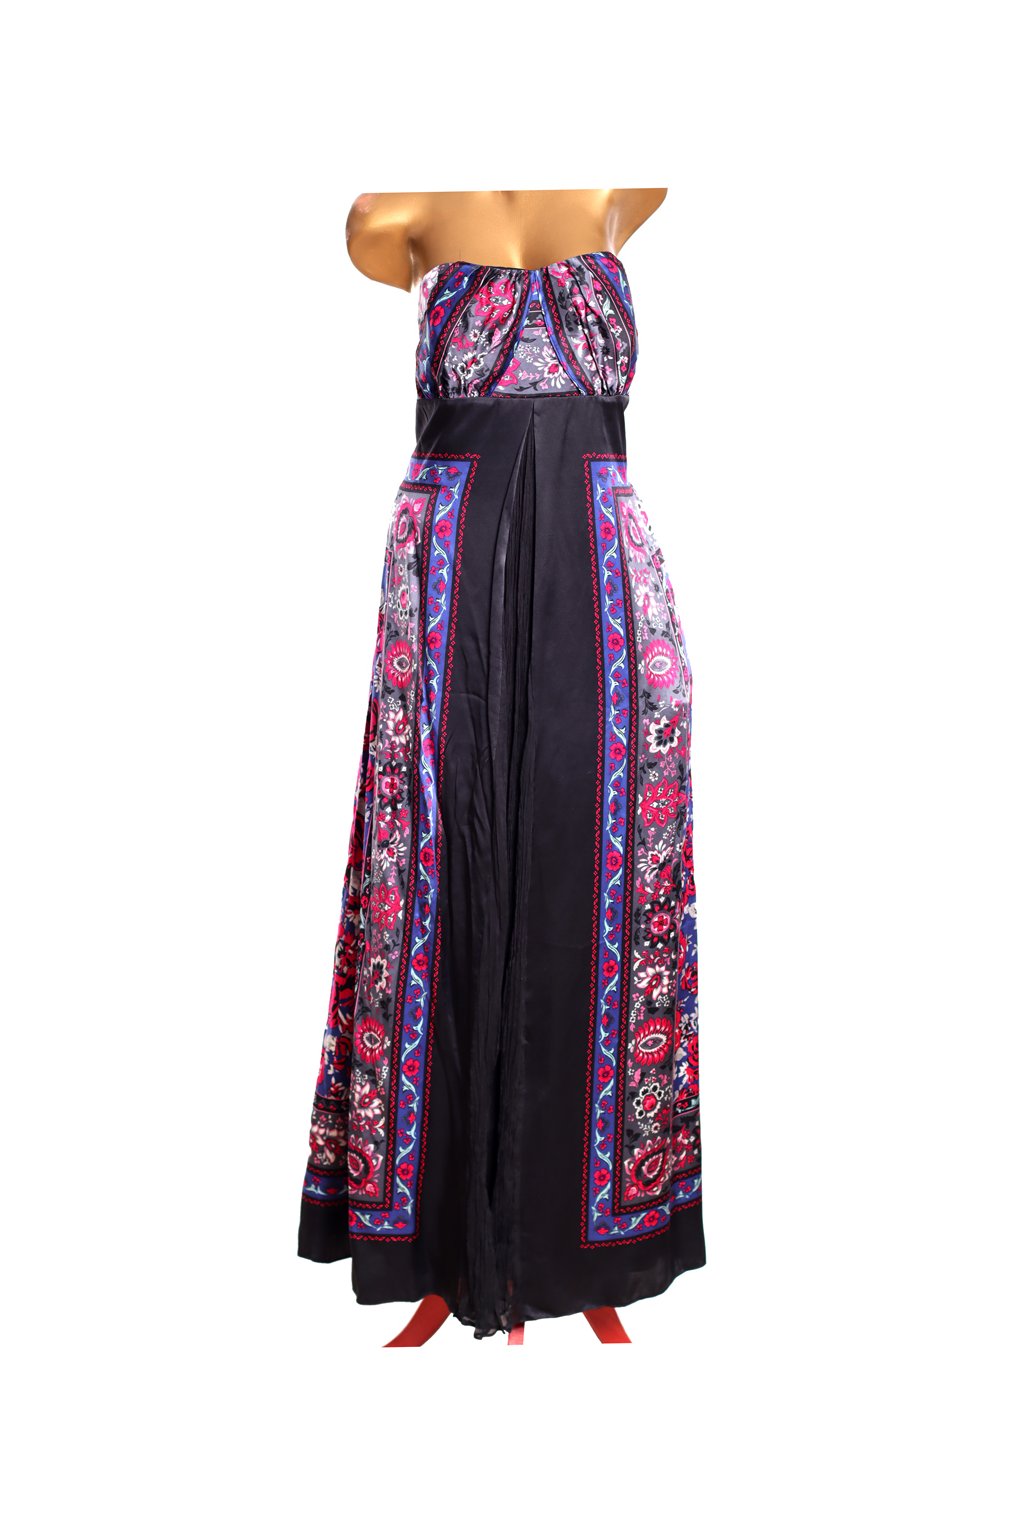 Dámské černé hedvábné společenské šaty s barevným vzorem / MonSoon / XXL (44) / ANGLIE